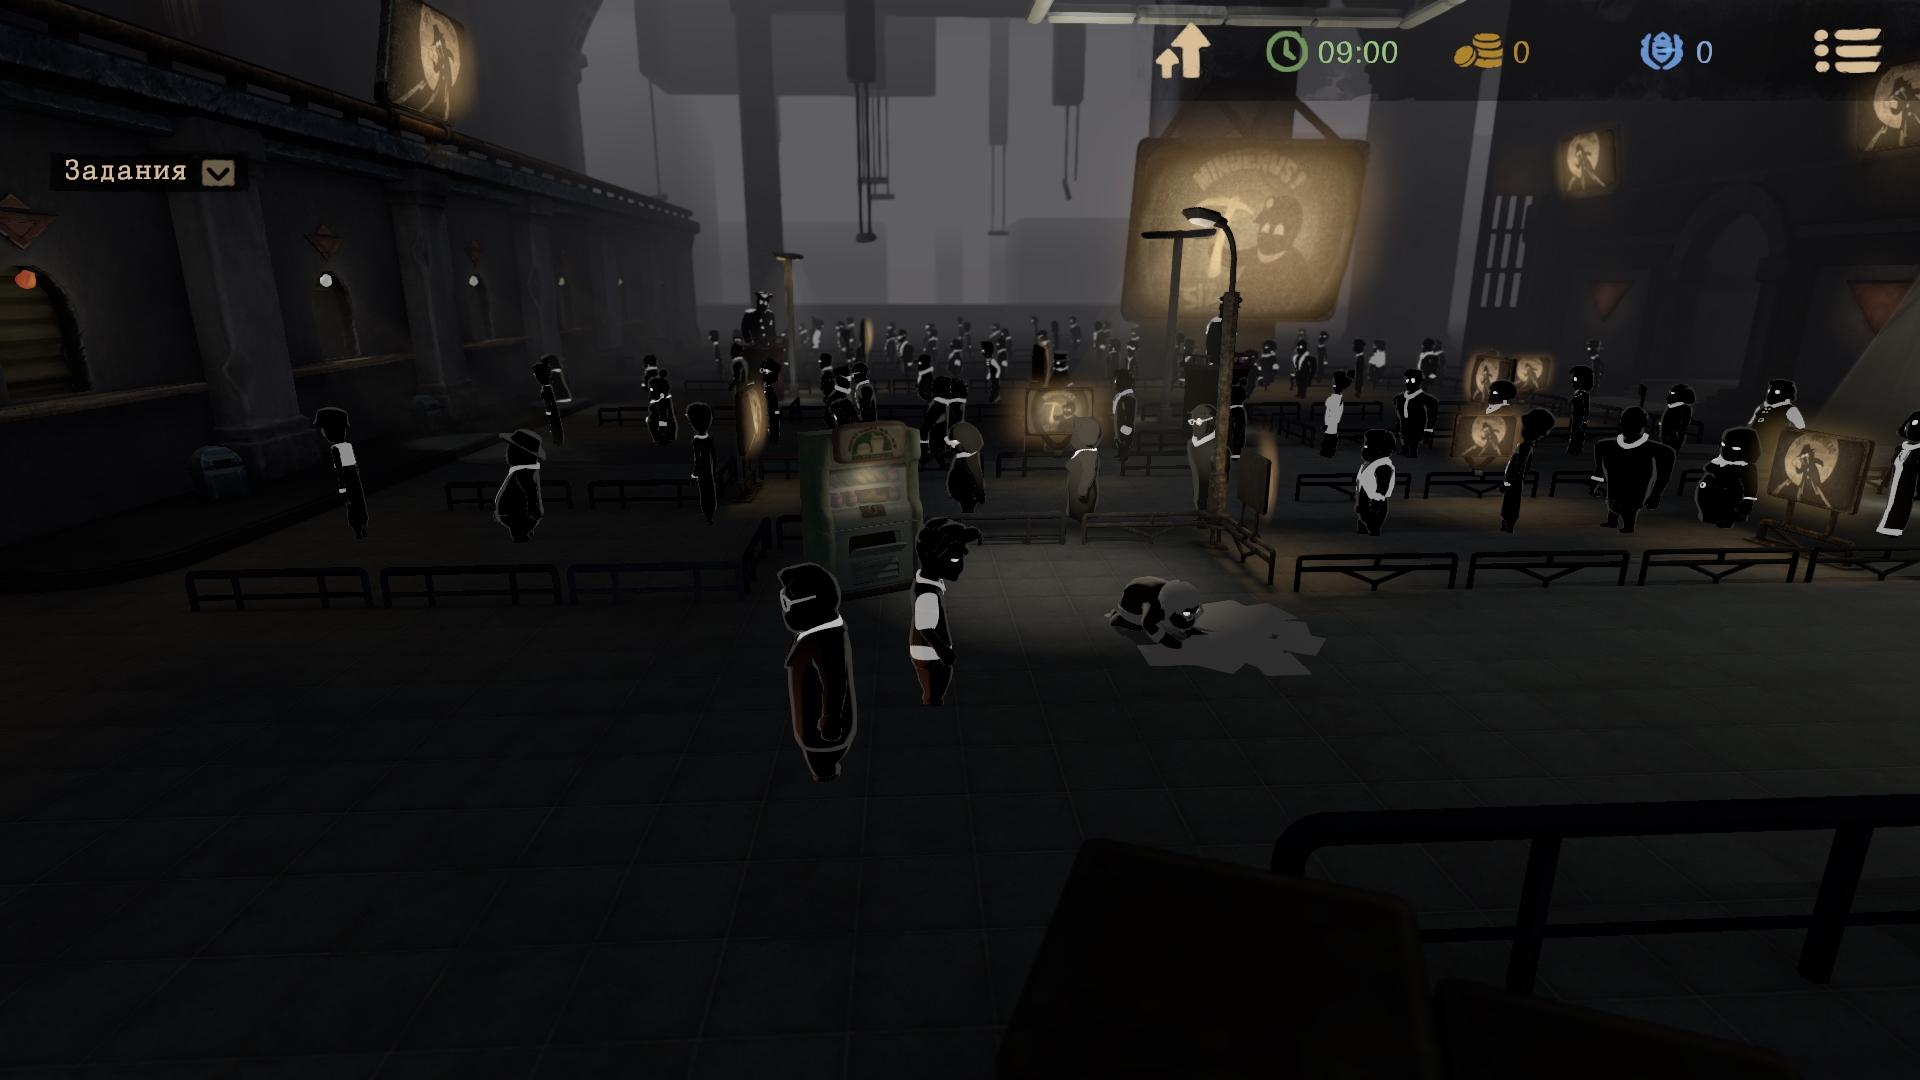 Скриншот из игры Beholder 2 под номером 9